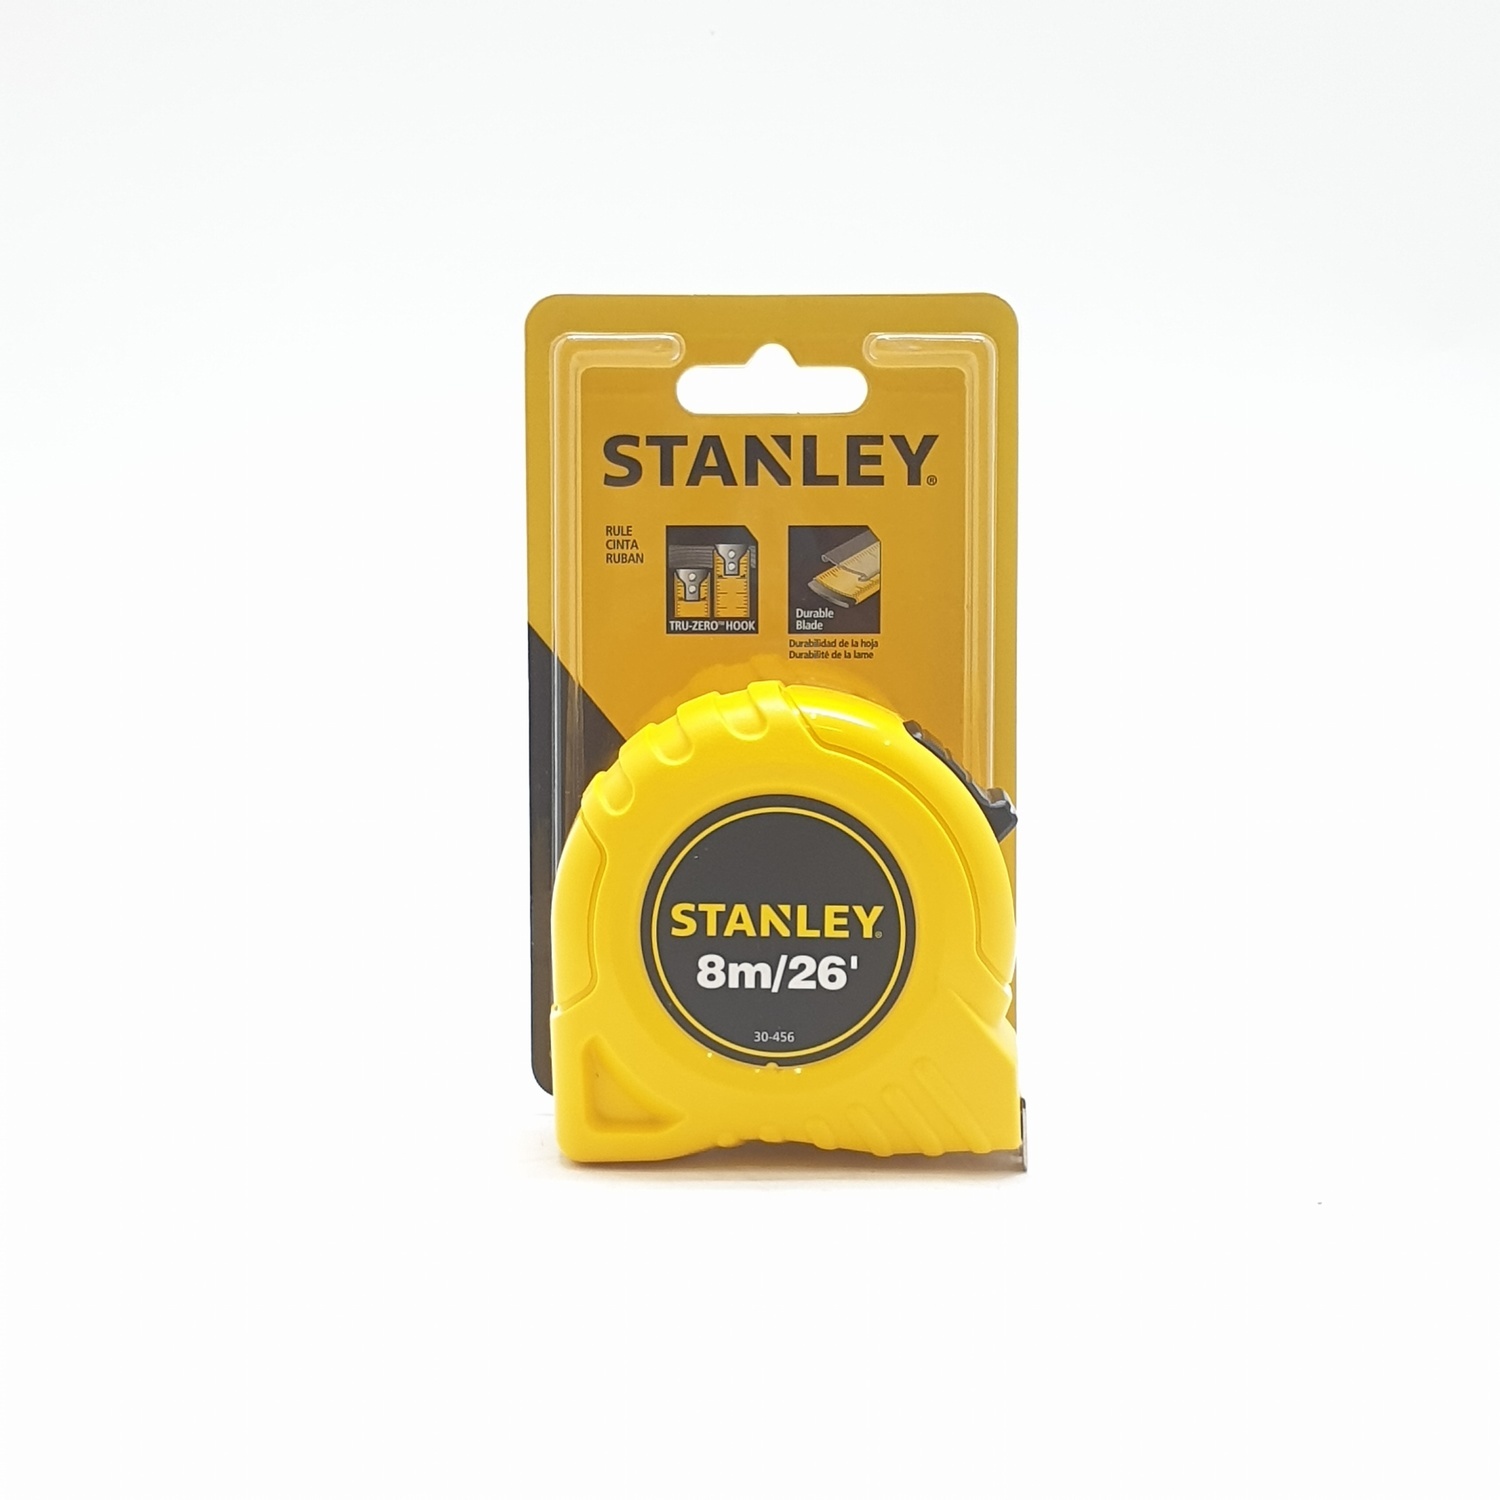 Stanley Tape Measures Global (30-456N)